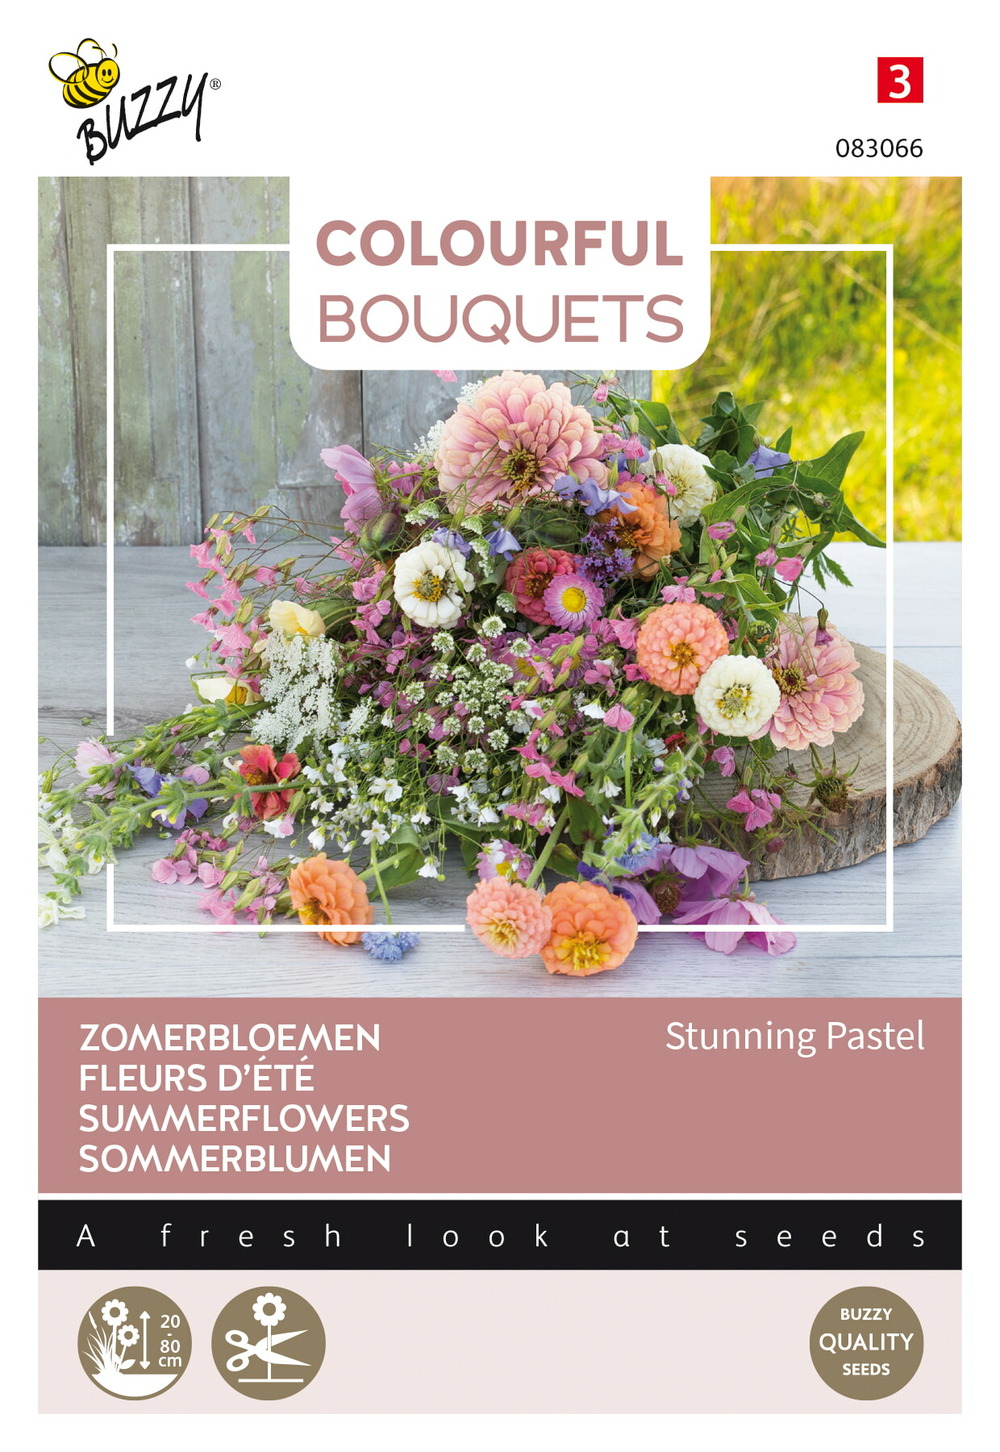 Buzzy colourful bouquets, stunning pastel mix - ca. 3 gr (livraison gratuite)